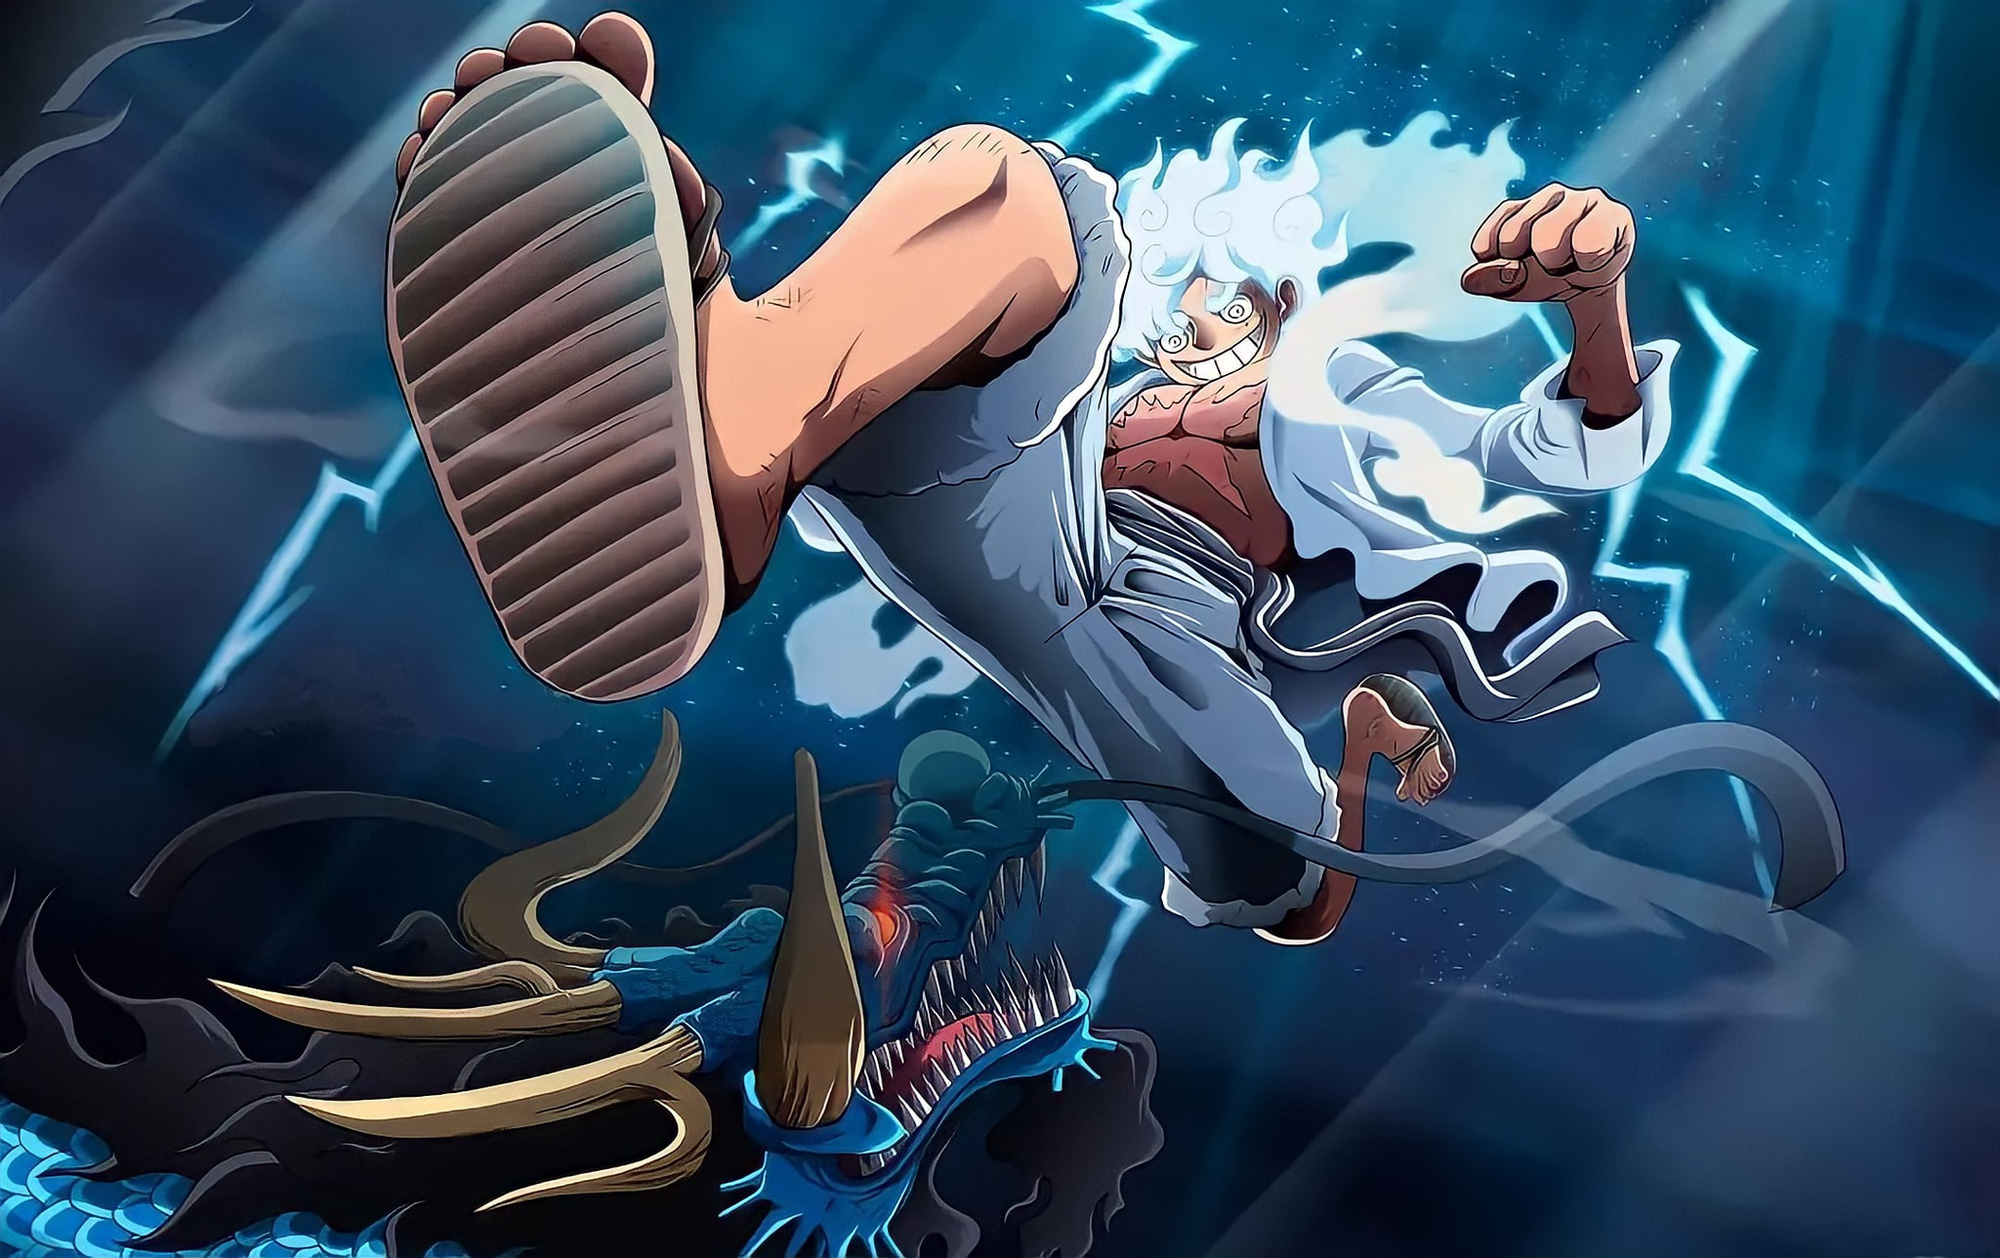 God Luffy được cho là phiên bản nâng cấp của Luffy sau khi sử dụng trái ác quỷ Gear Fourth. Với nhiều tình huống khó khăn, Luffy đã tiếp thêm sức mạnh god để đánh bại những kẻ thù đáng gờm trong bộ truyện. Hãy xem hình ảnh god Luffy để khám phá sức mạnh đáng kinh ngạc này!